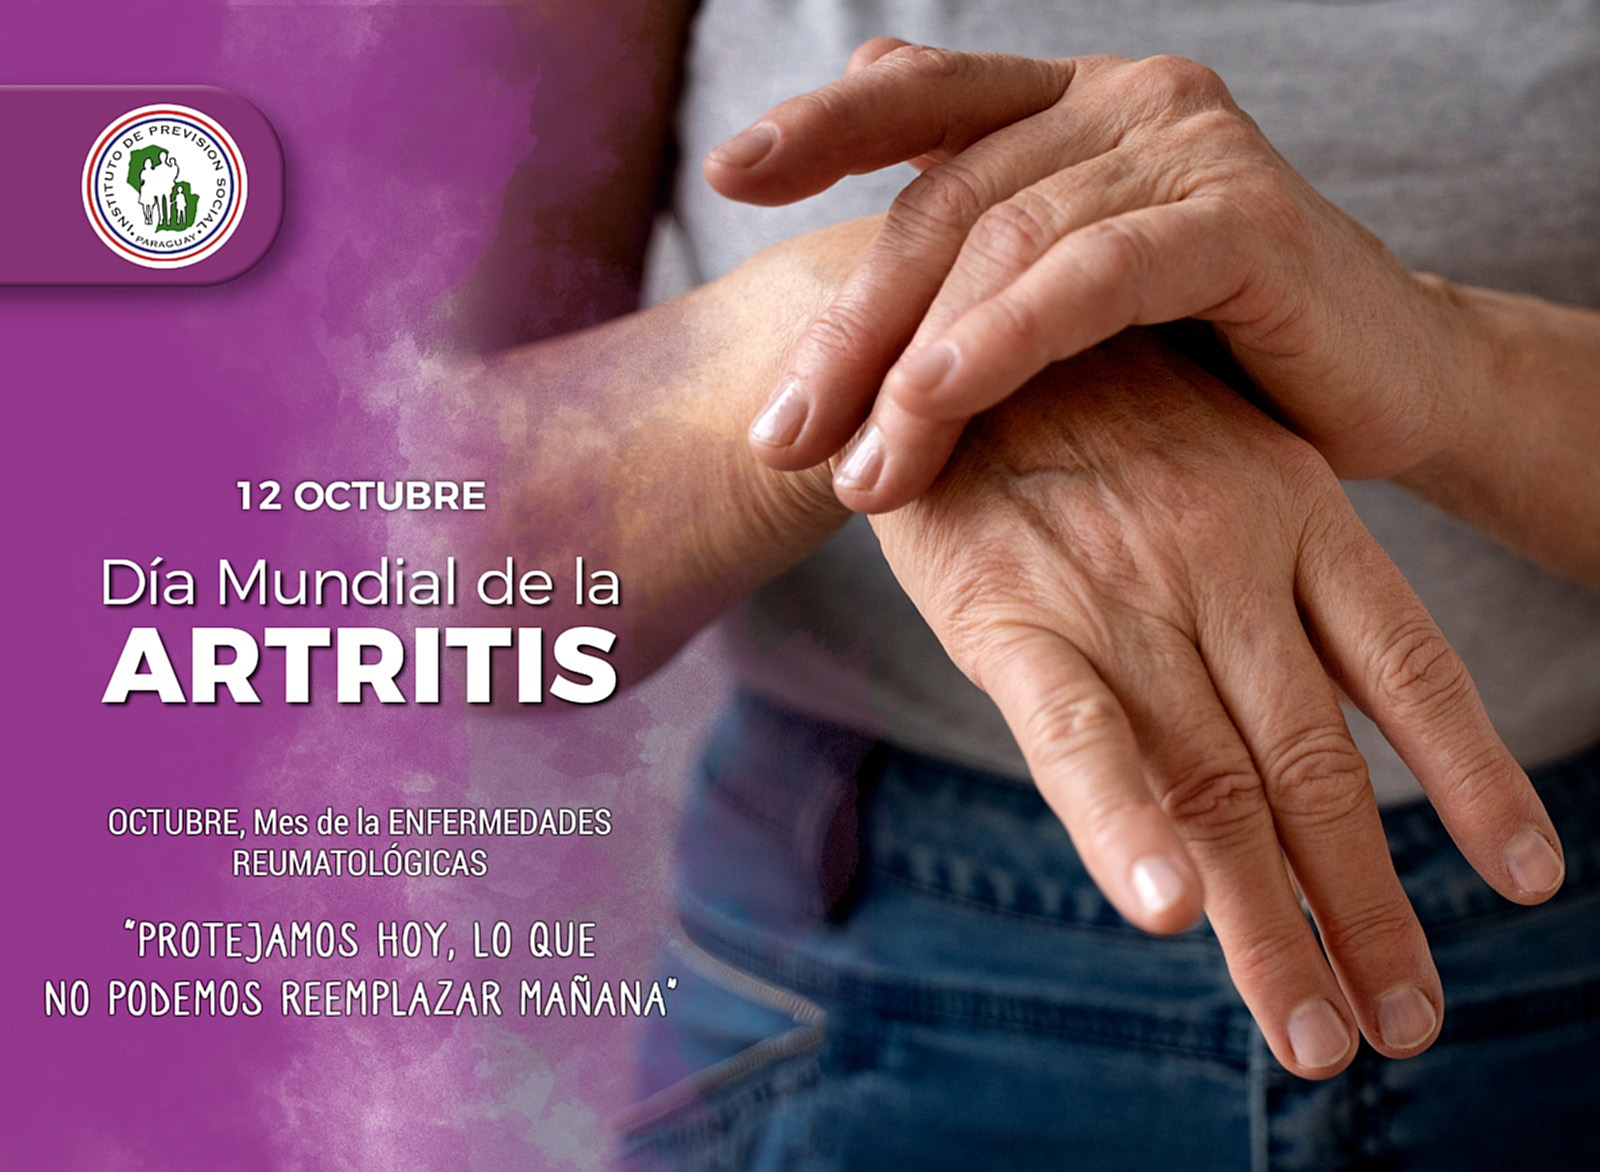 Tratamiento precoz es fundamental para enfrentar artritis reumatoide